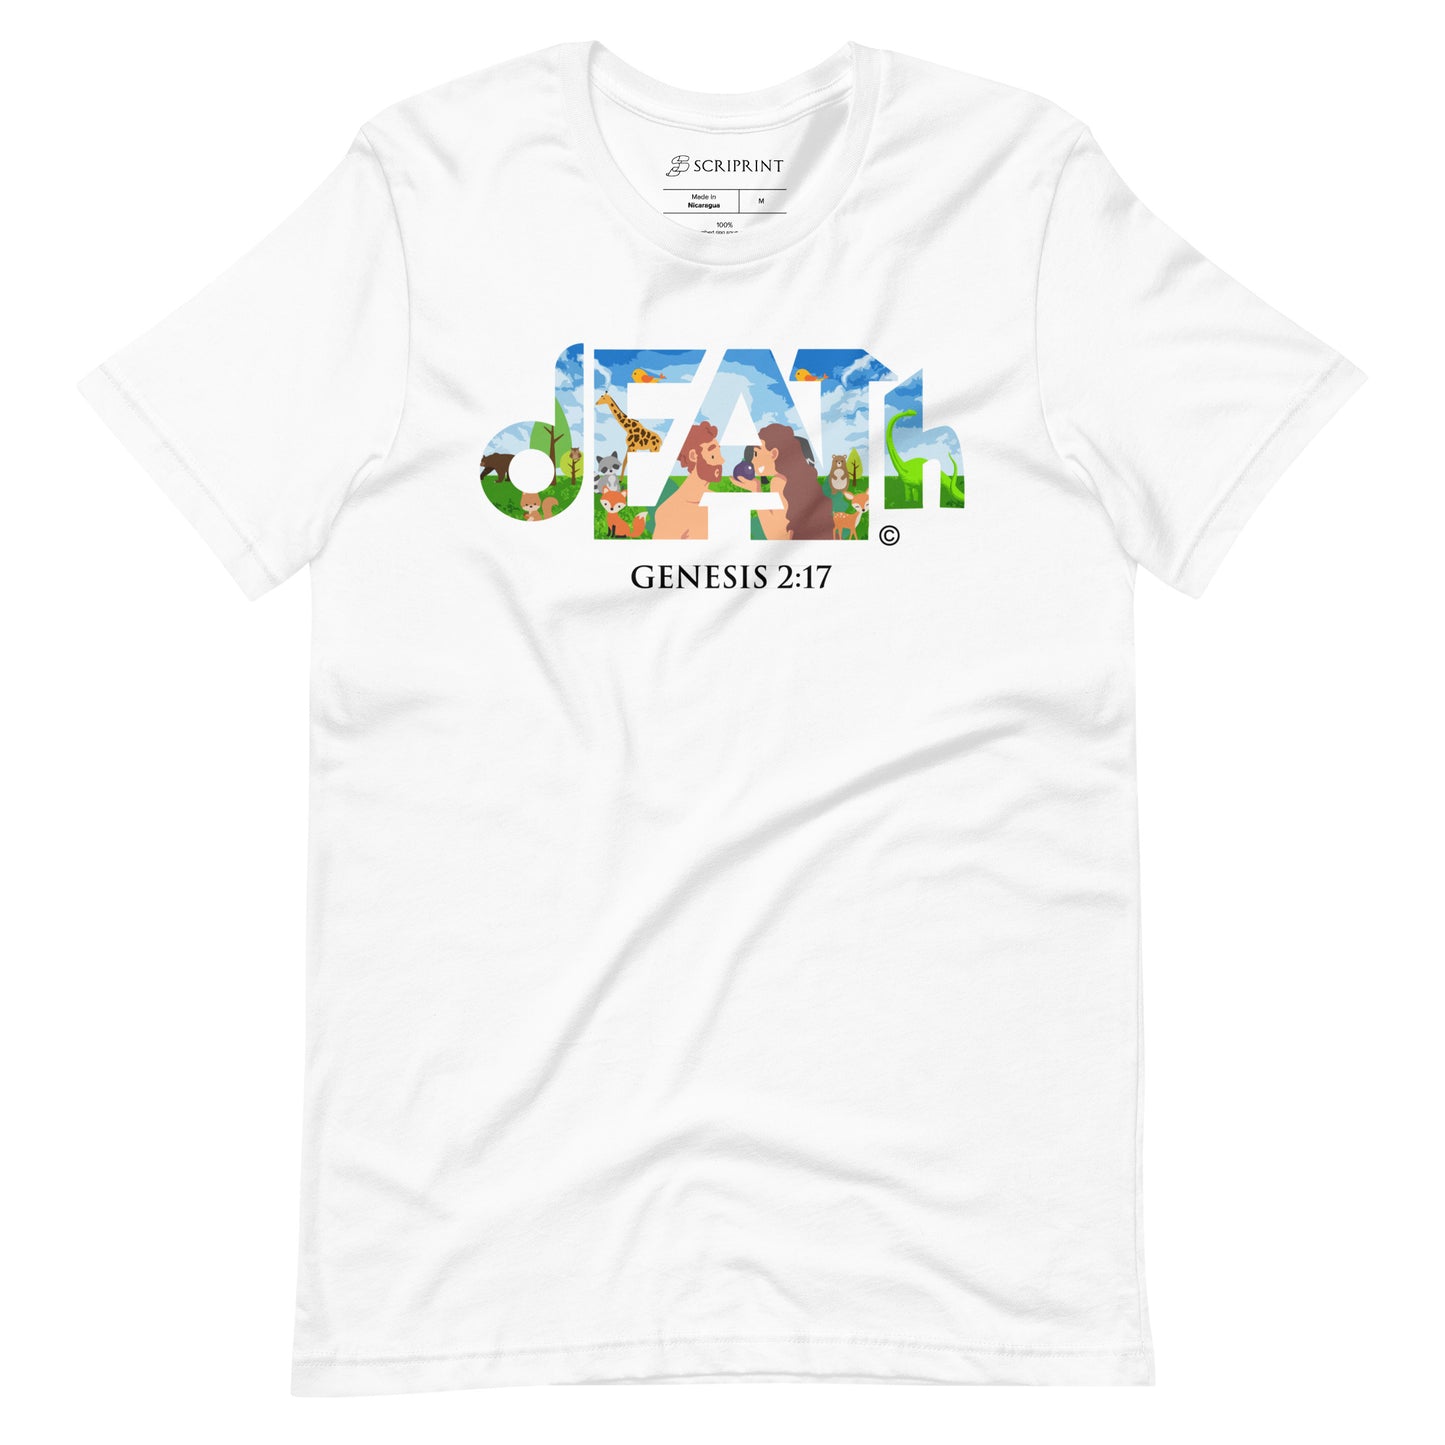 Death Men's T-Shirt